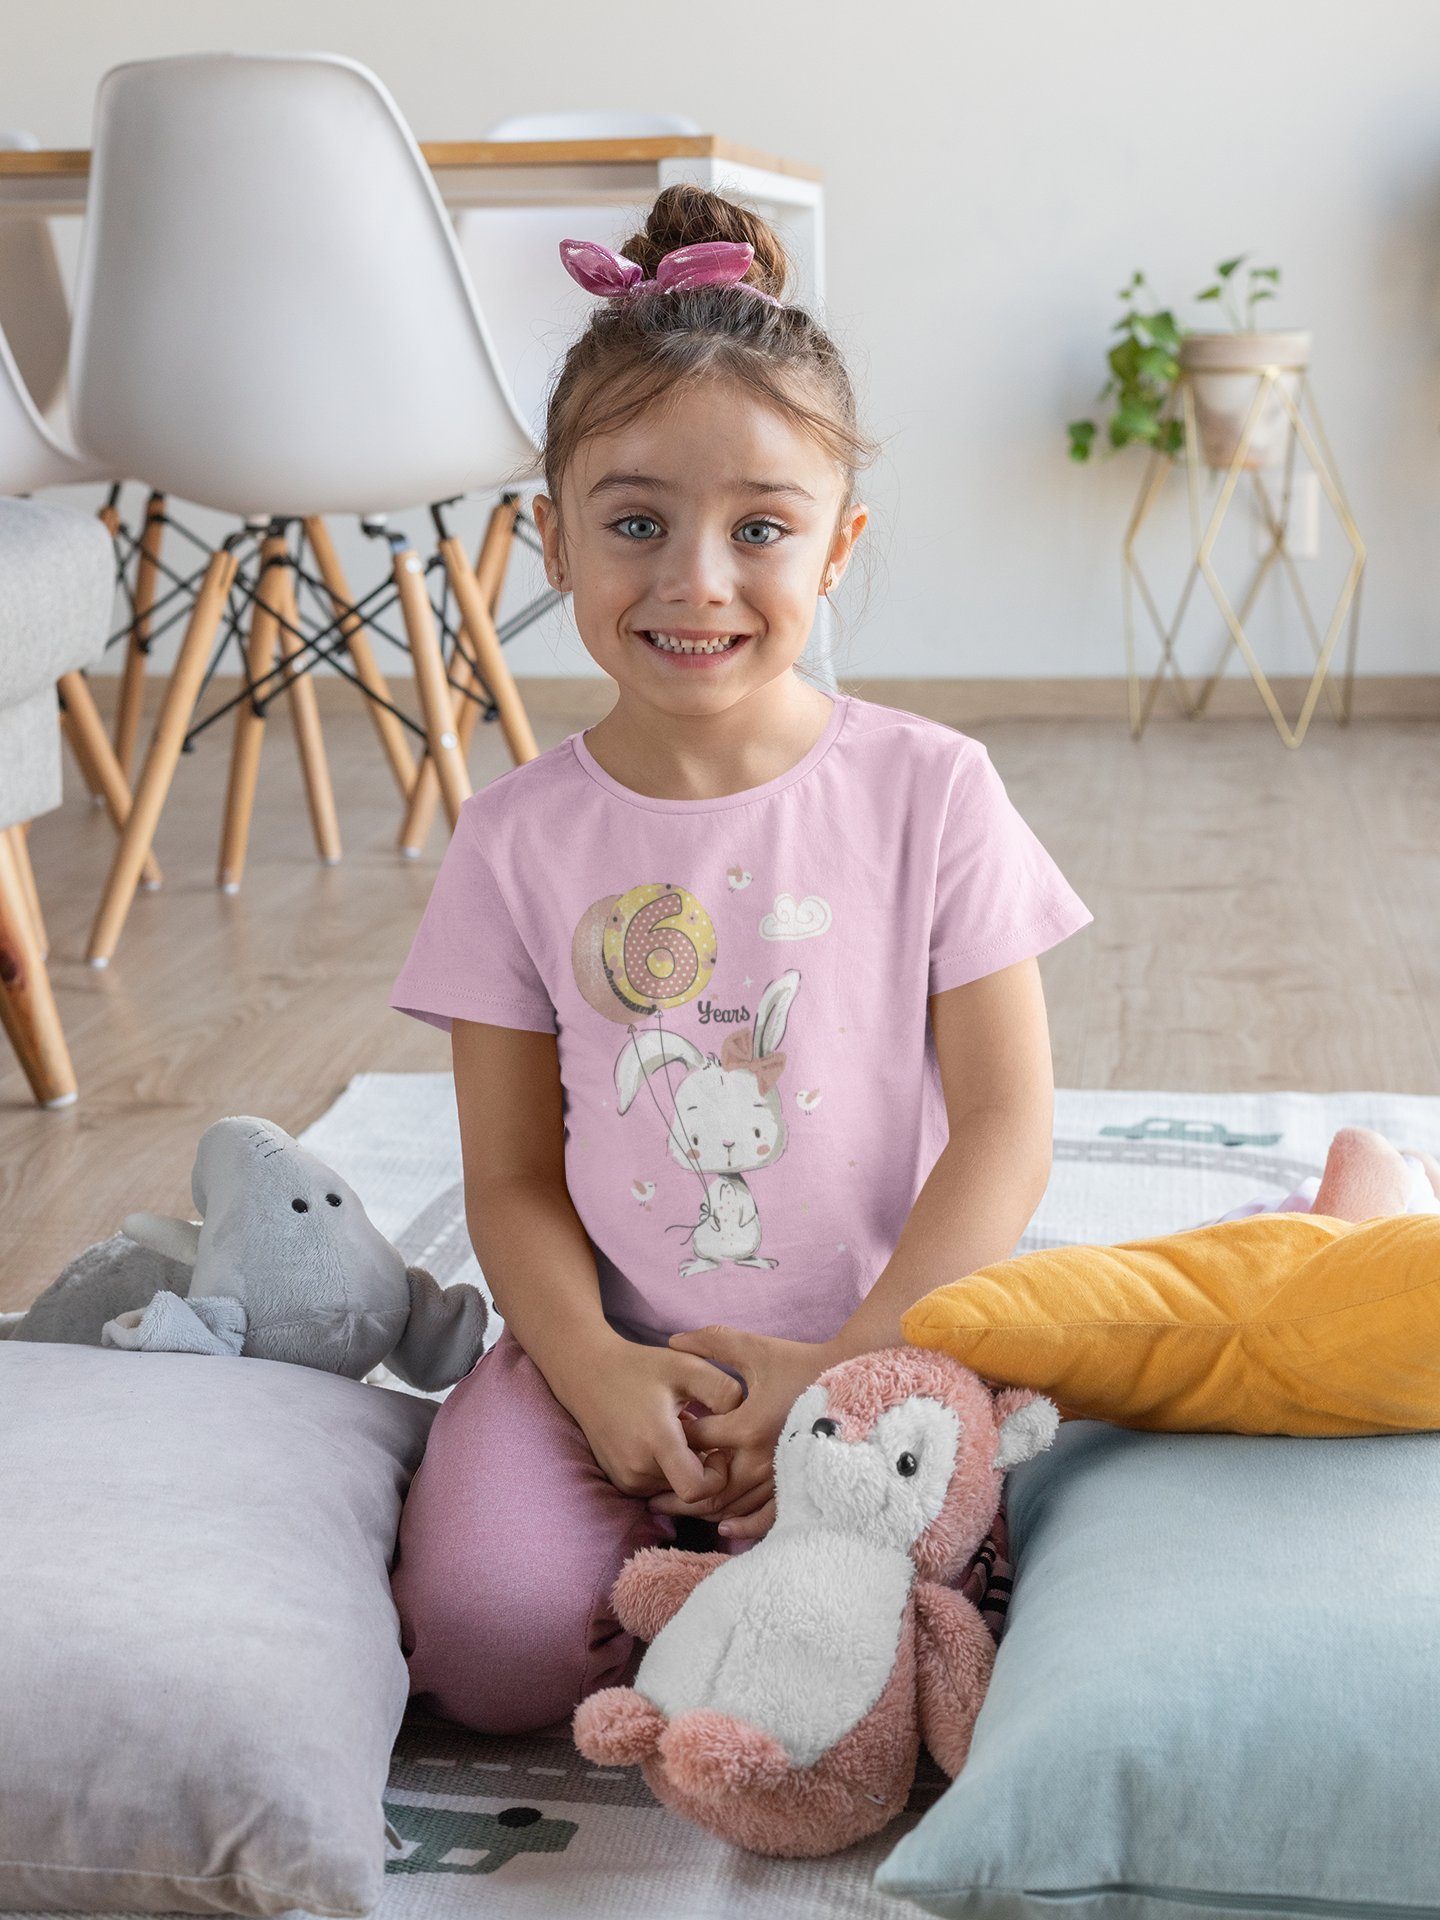 Baddery Print-Shirt Geburstagsgeschenk Light Jahre aus hochwertiger 6 Baumwolle für Siebdruck, : Pink mit Hase Mädchen